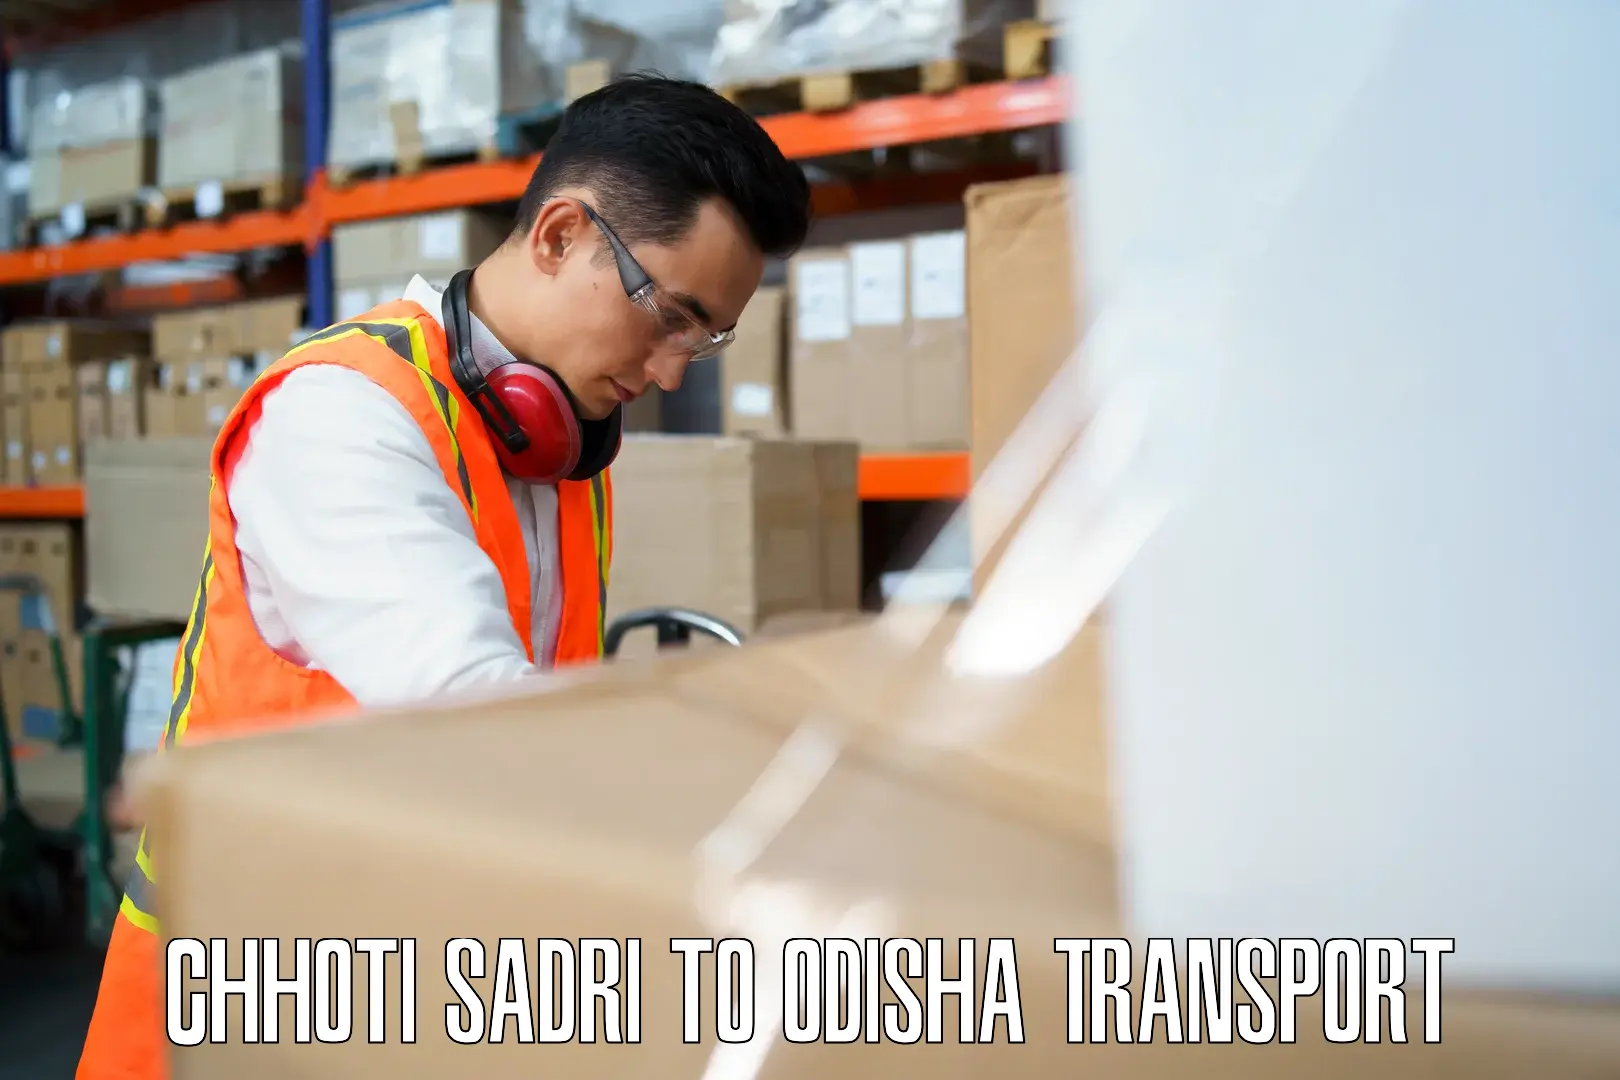 Furniture transport service Chhoti Sadri to Kesinga